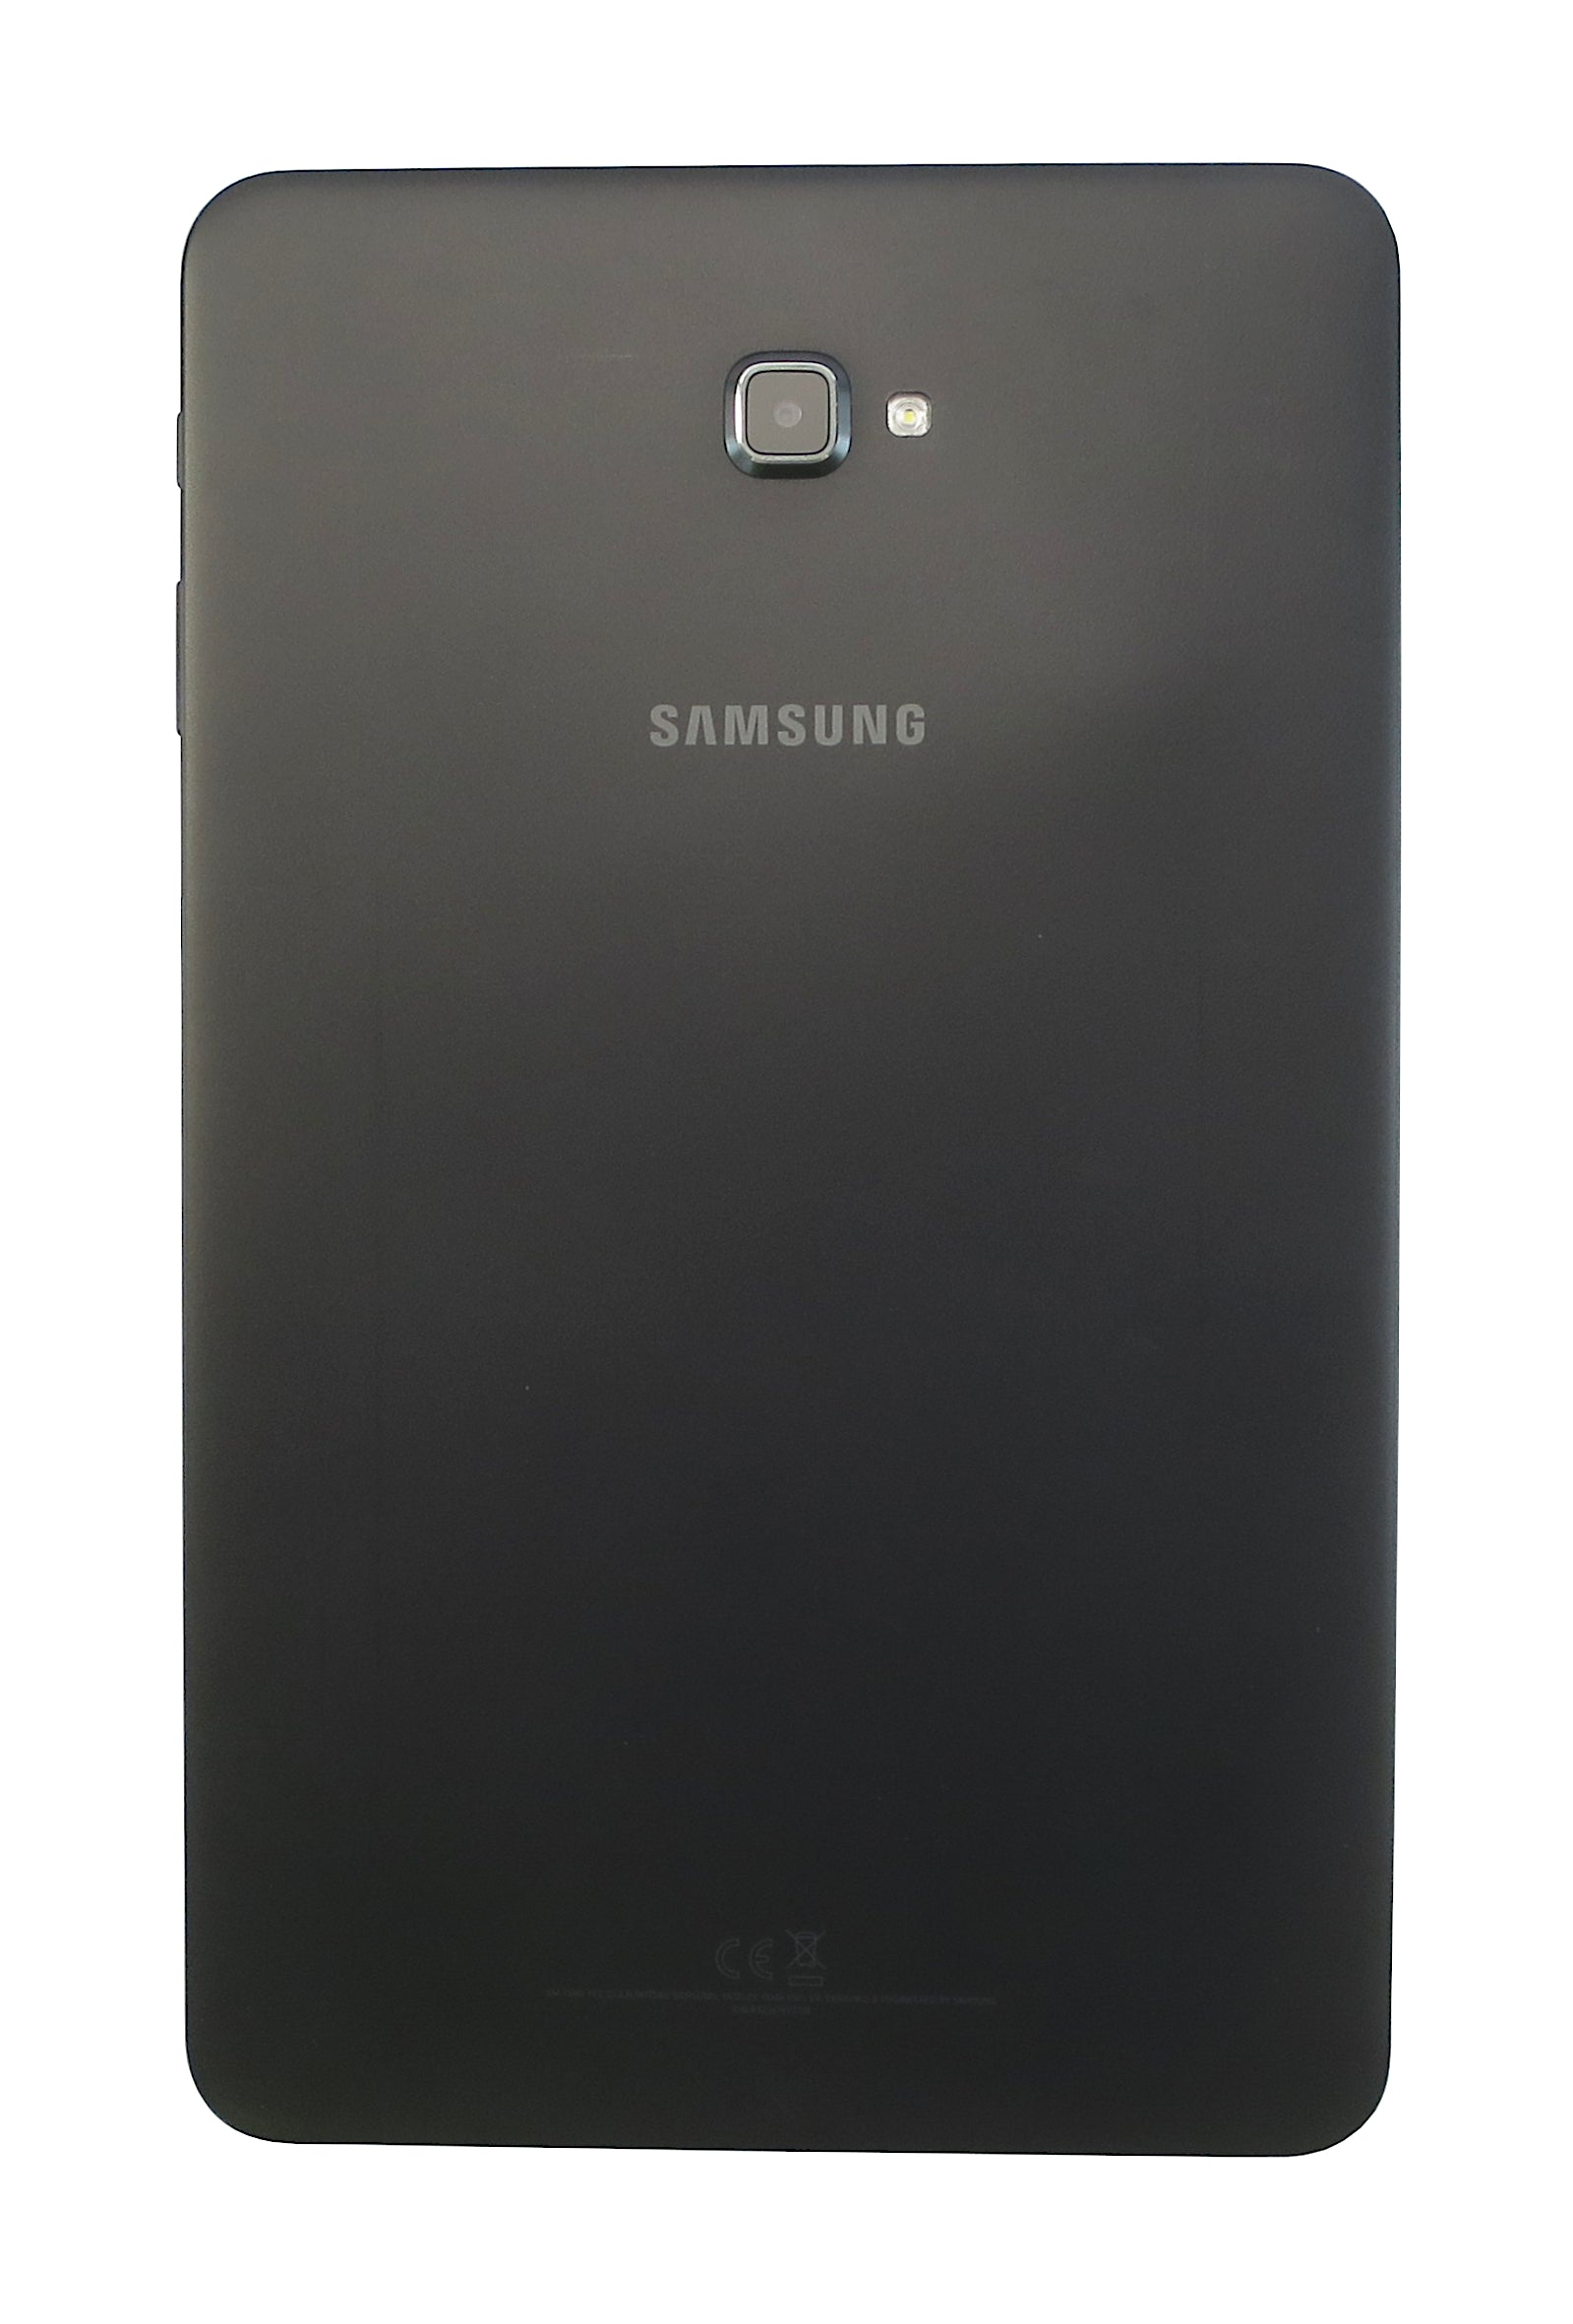 Samsung Galaxy Tab A 2016 Tablet, 10.1", 16GB, WiFi, Black, SM-T580